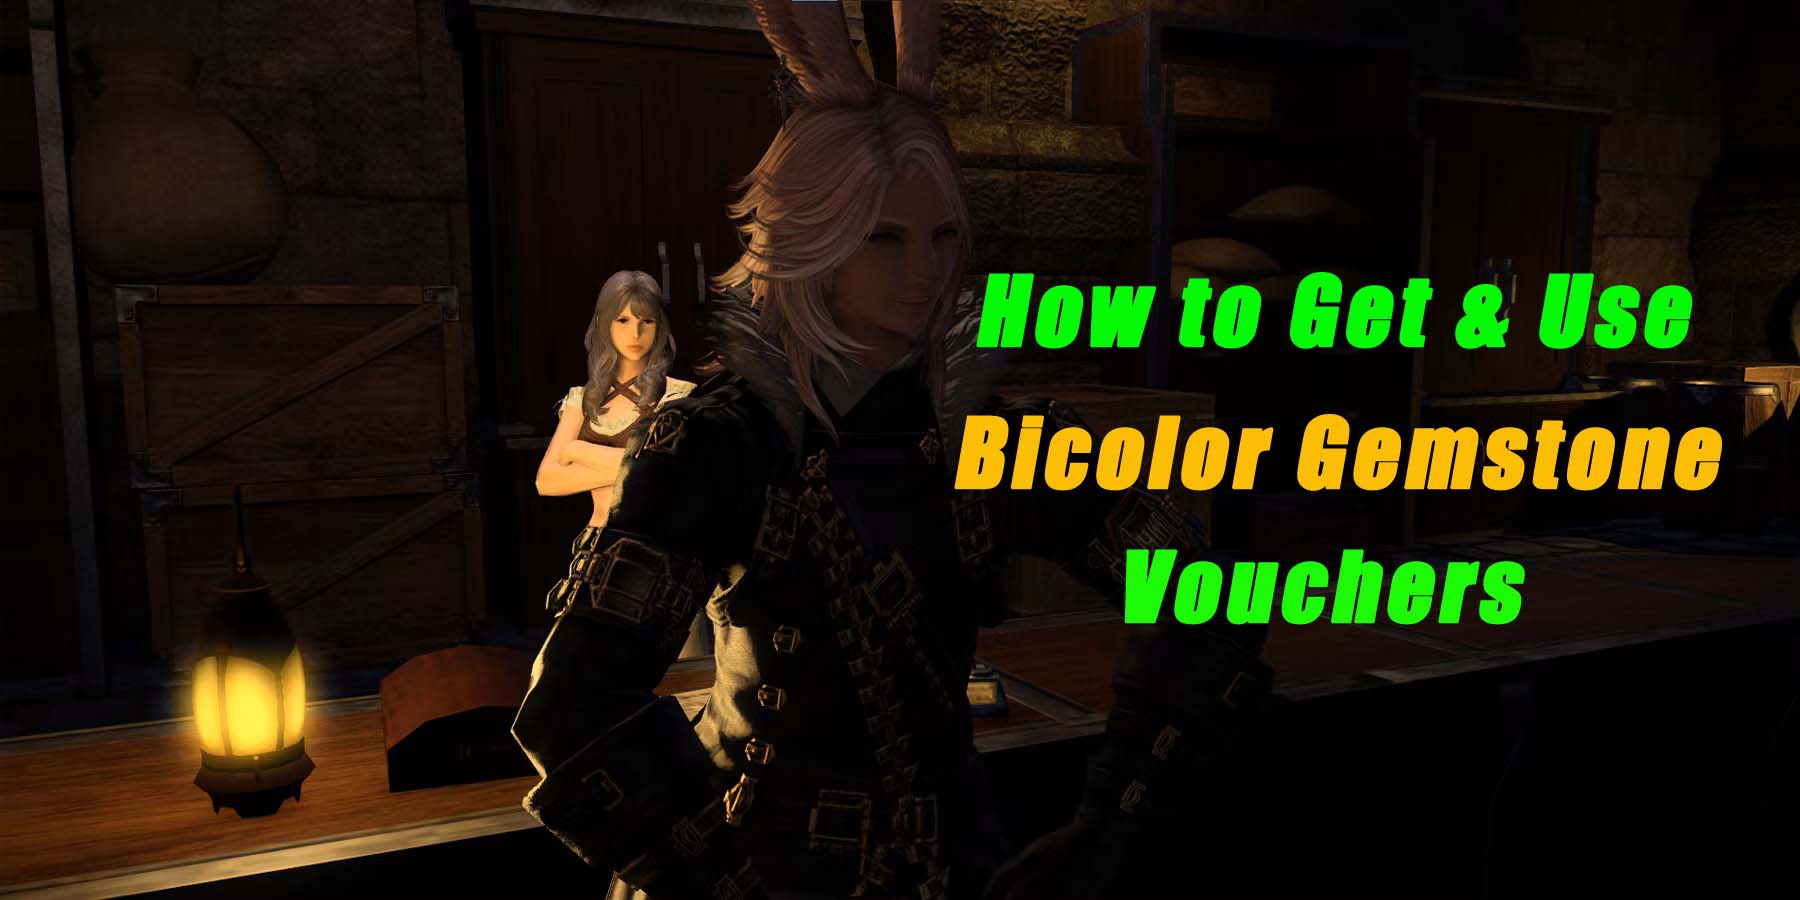 Final Fantasy XIV: Endwalker - How to Get & Use Bicolor Gemstone Vouchers?